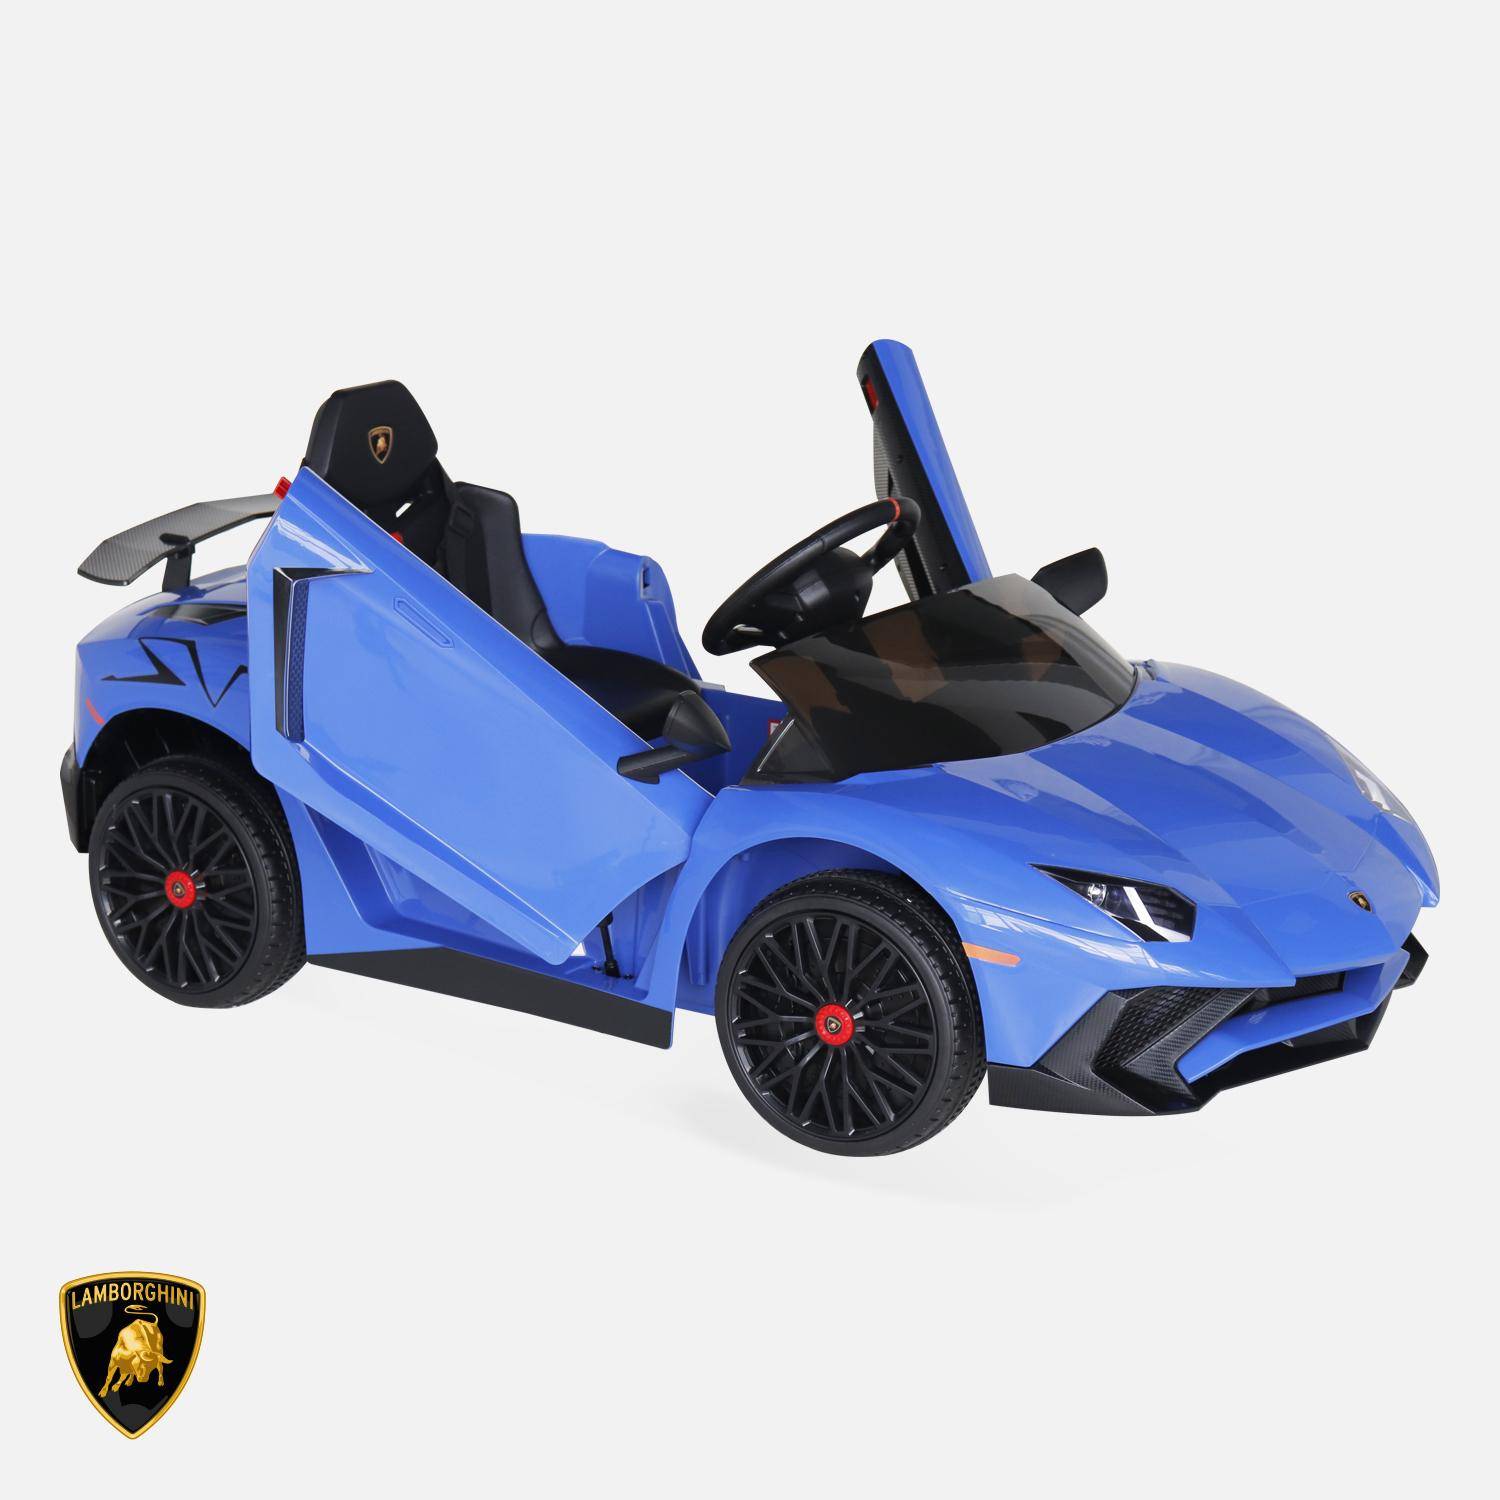 12V elektrische Lamborghini kinderauto, blauw, 1 zitplaats, met radio, afstandsbediening, MP3, USB-poort en functionele koplampen Photo2